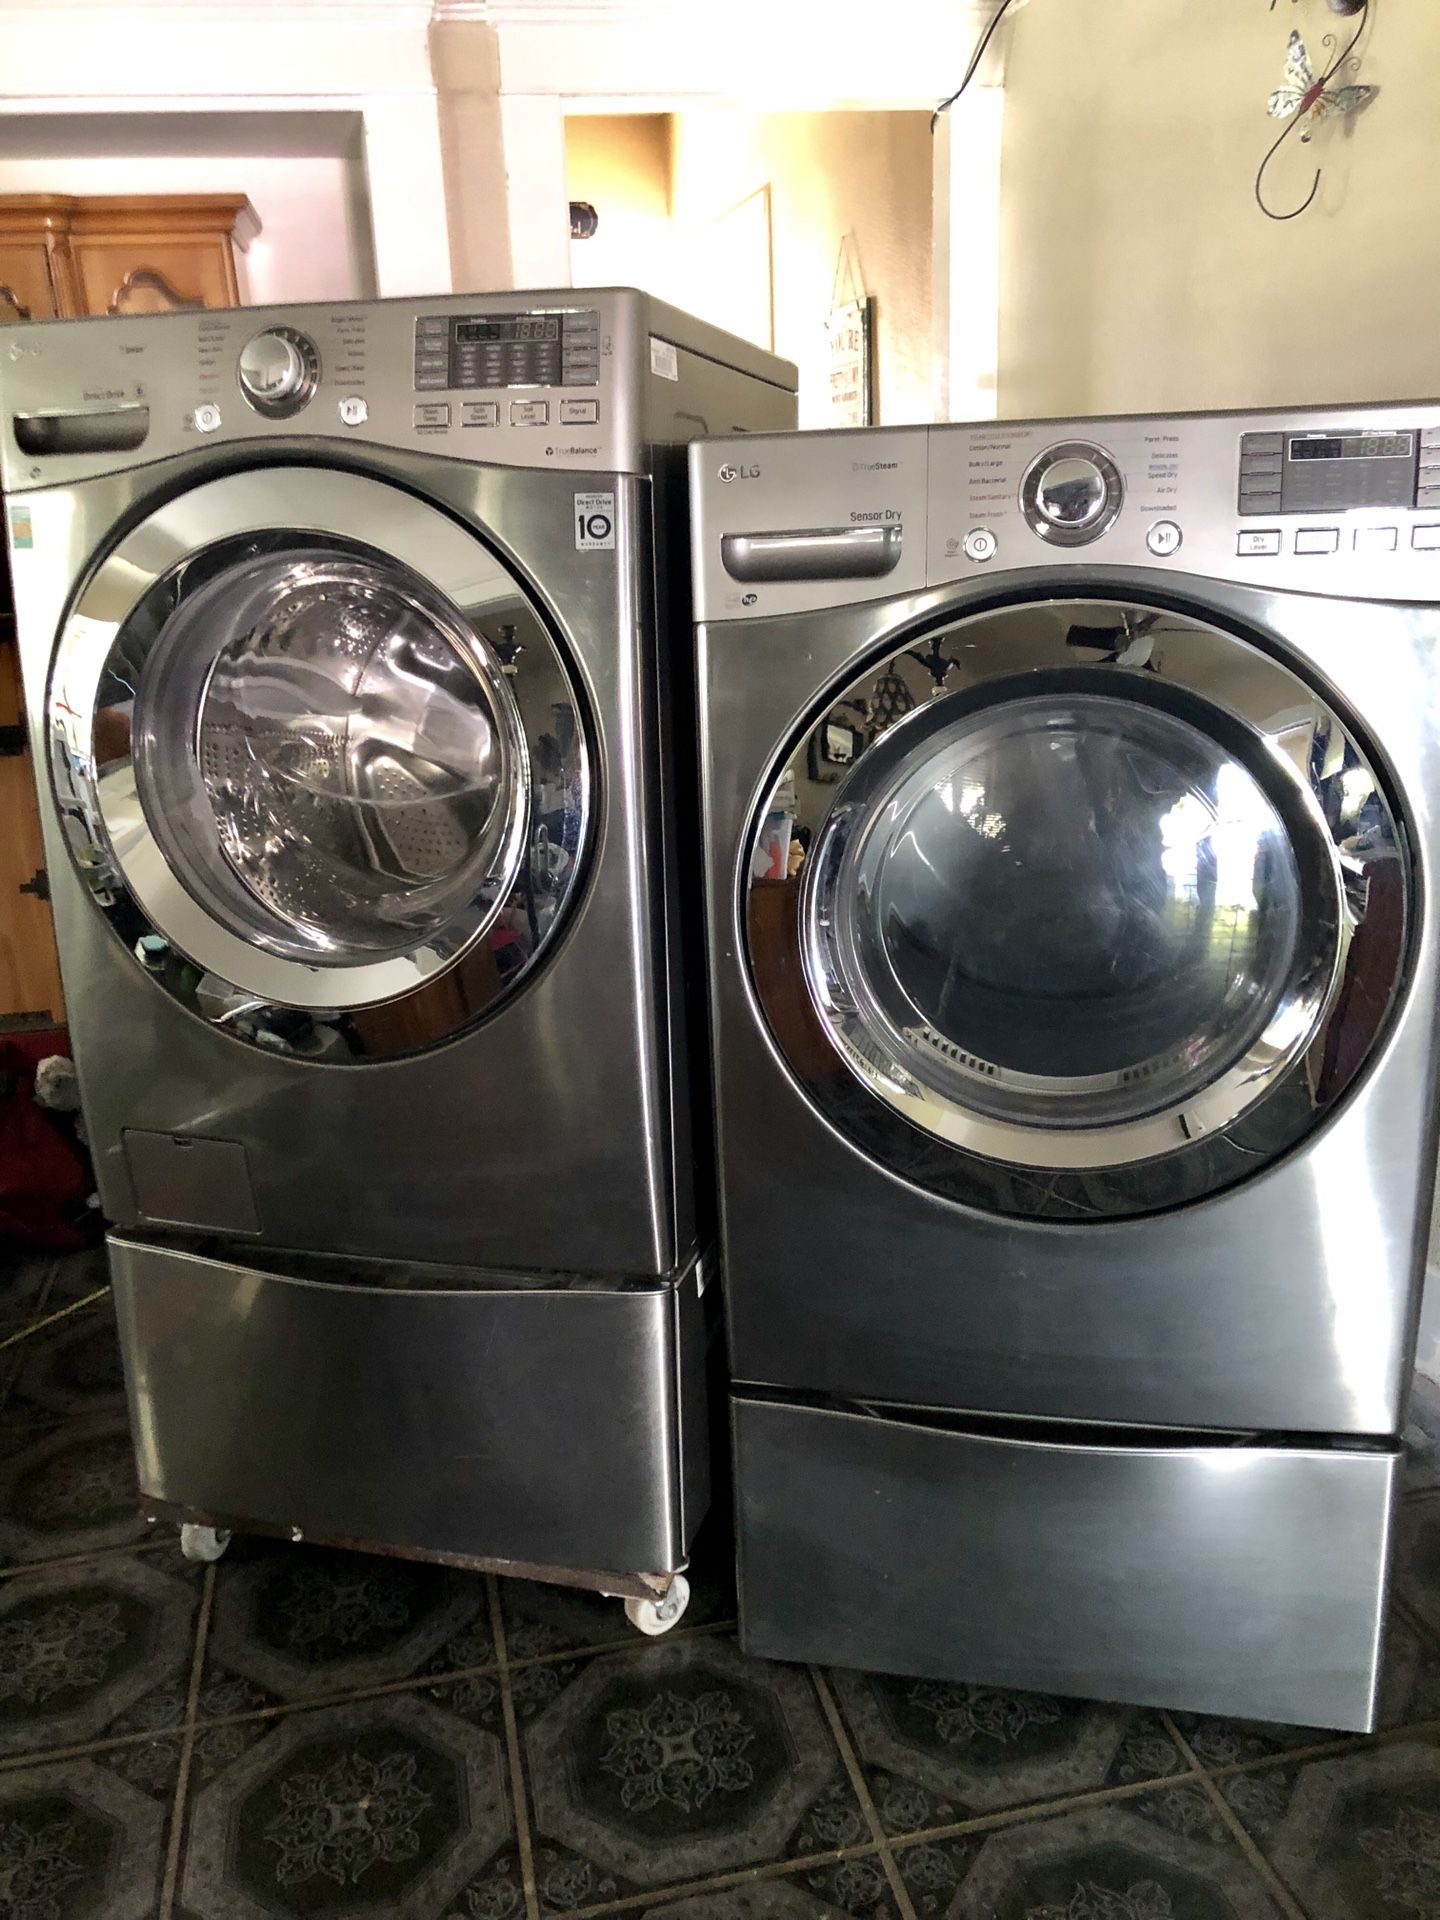 LG Washer and dryer still under warranty